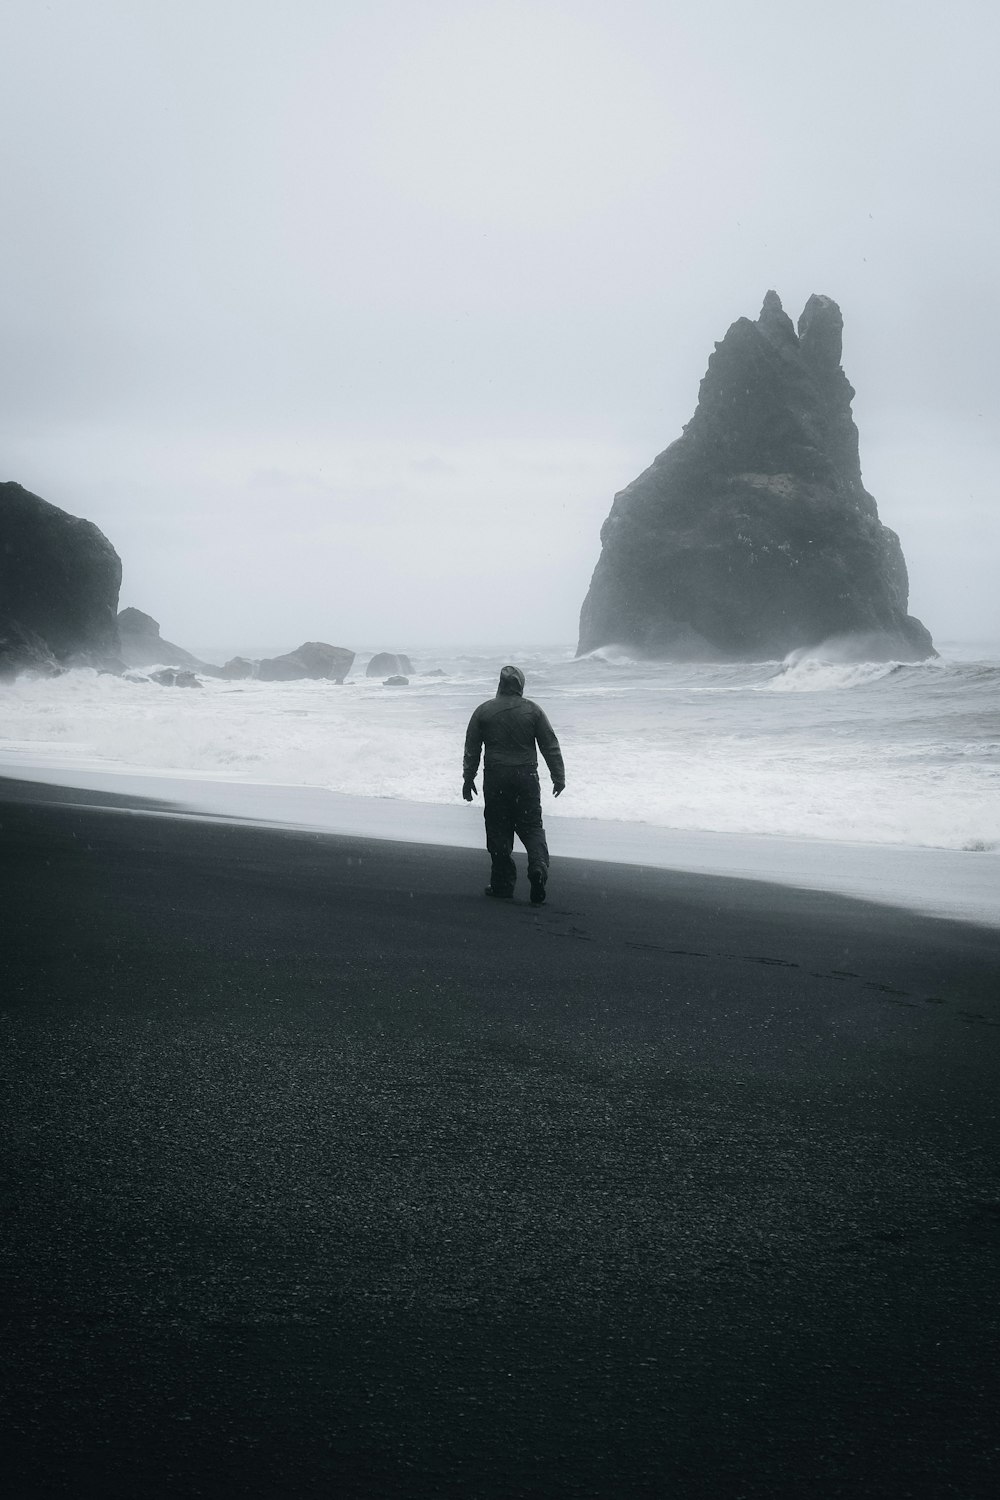 Un uomo in piedi su una spiaggia vicino all'oceano